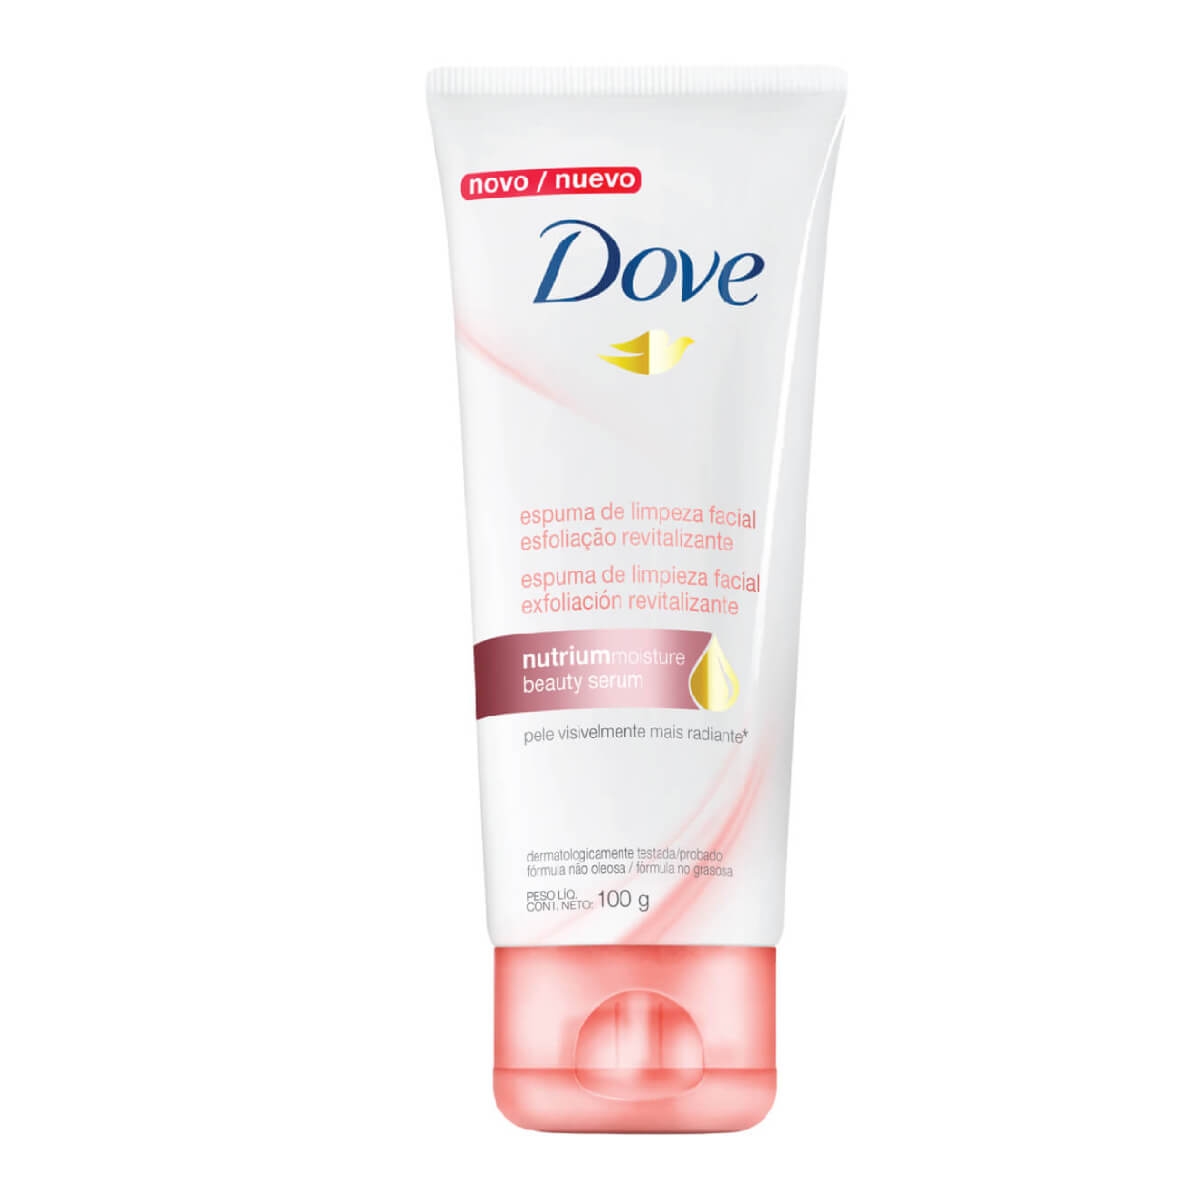 Espuma de Limpeza Dove Esfoliação Revitalizante Facial Nutrium Moisture Beauty Serum 100g